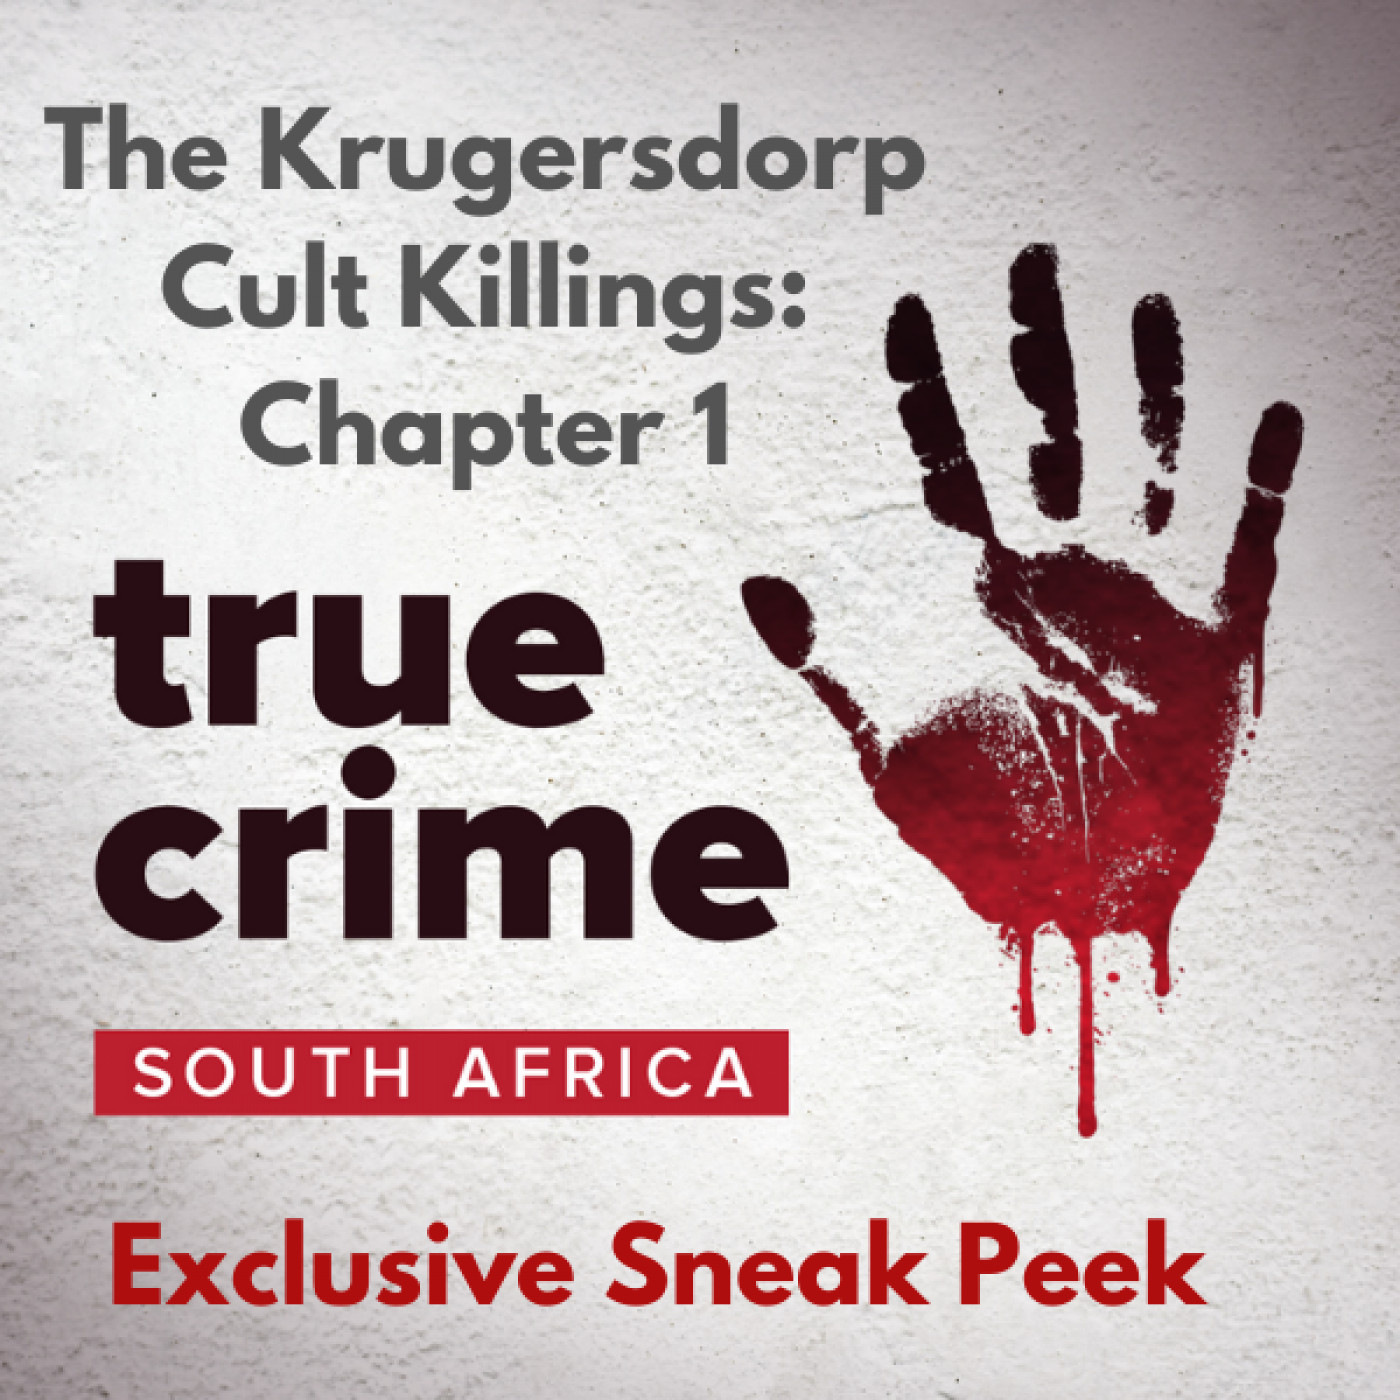 Exclusive Sneak Peek: The Krugersdorp Cult Killings: Chapter 1